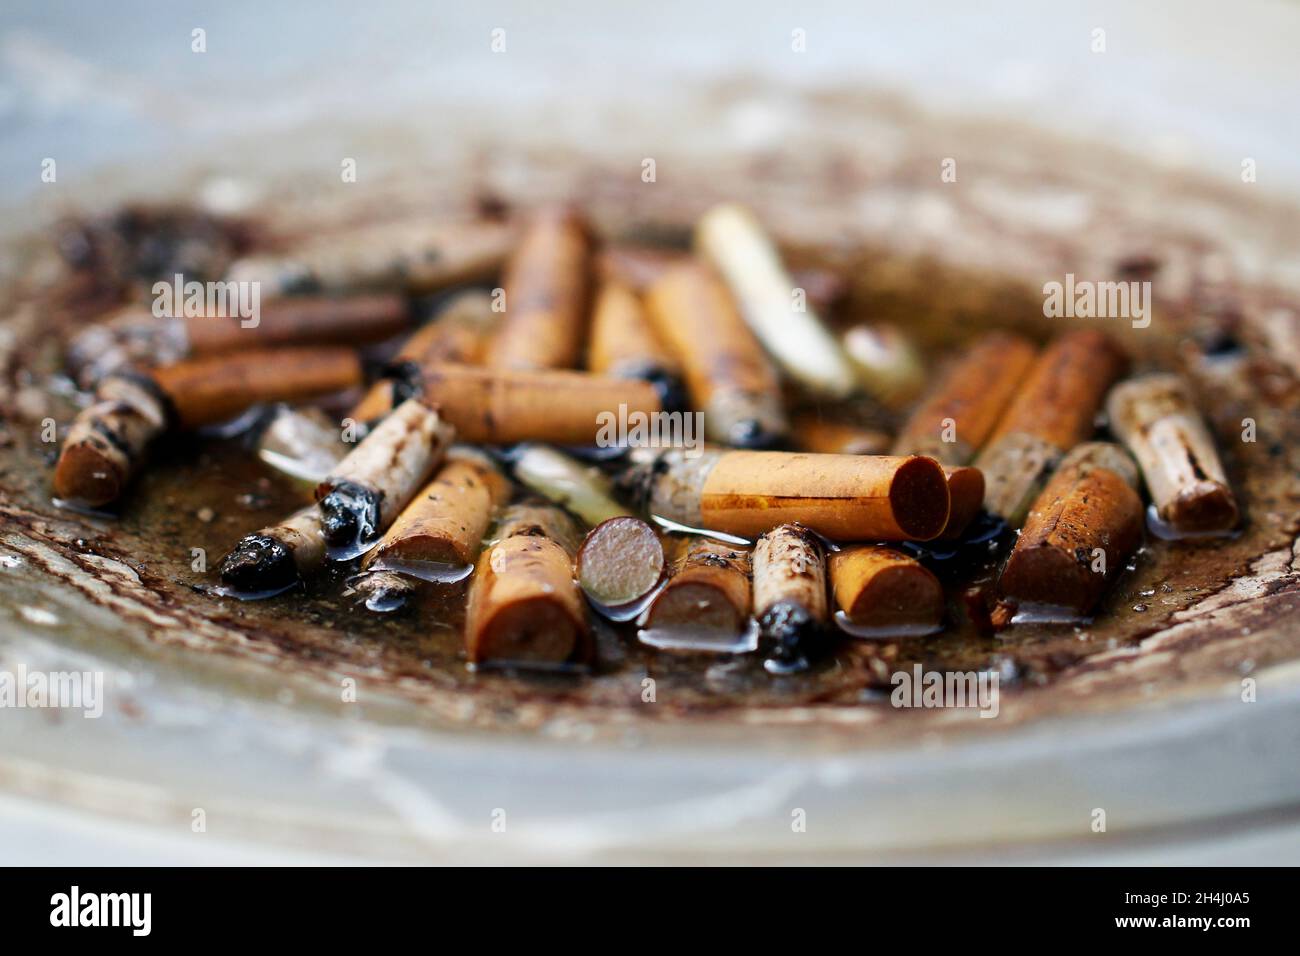 Viele Zigarettenstummel in einem grauen Standaschenbecher, draußen stehend, in den es hinein geregnet hat. Stock Photo